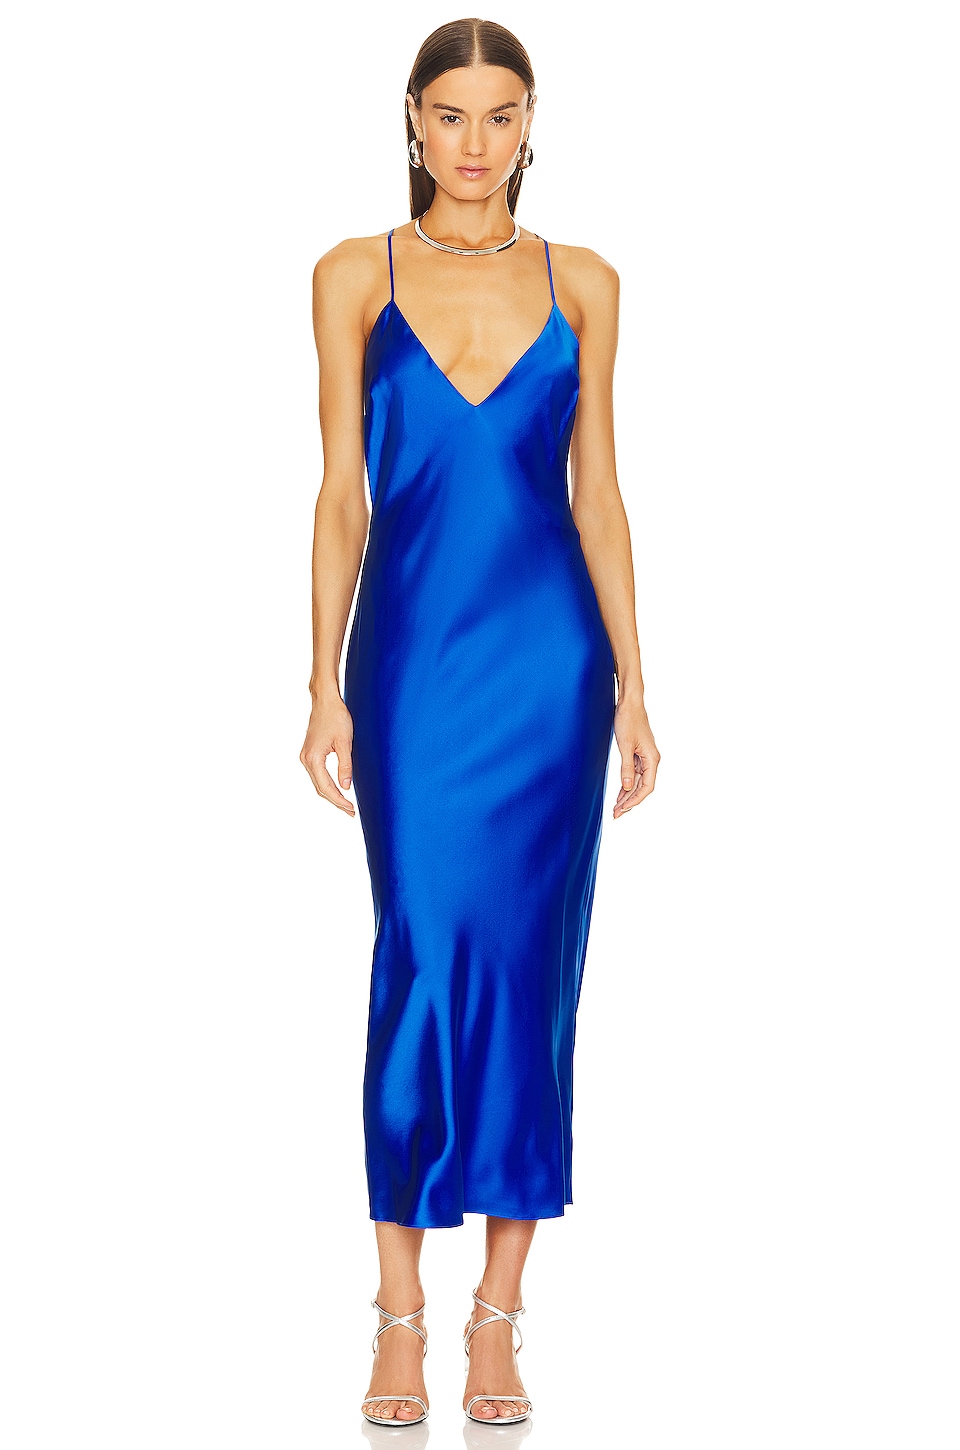 SER.O.YA Rowan Silk Maxi Dress in Royal Blue | REVOLVE